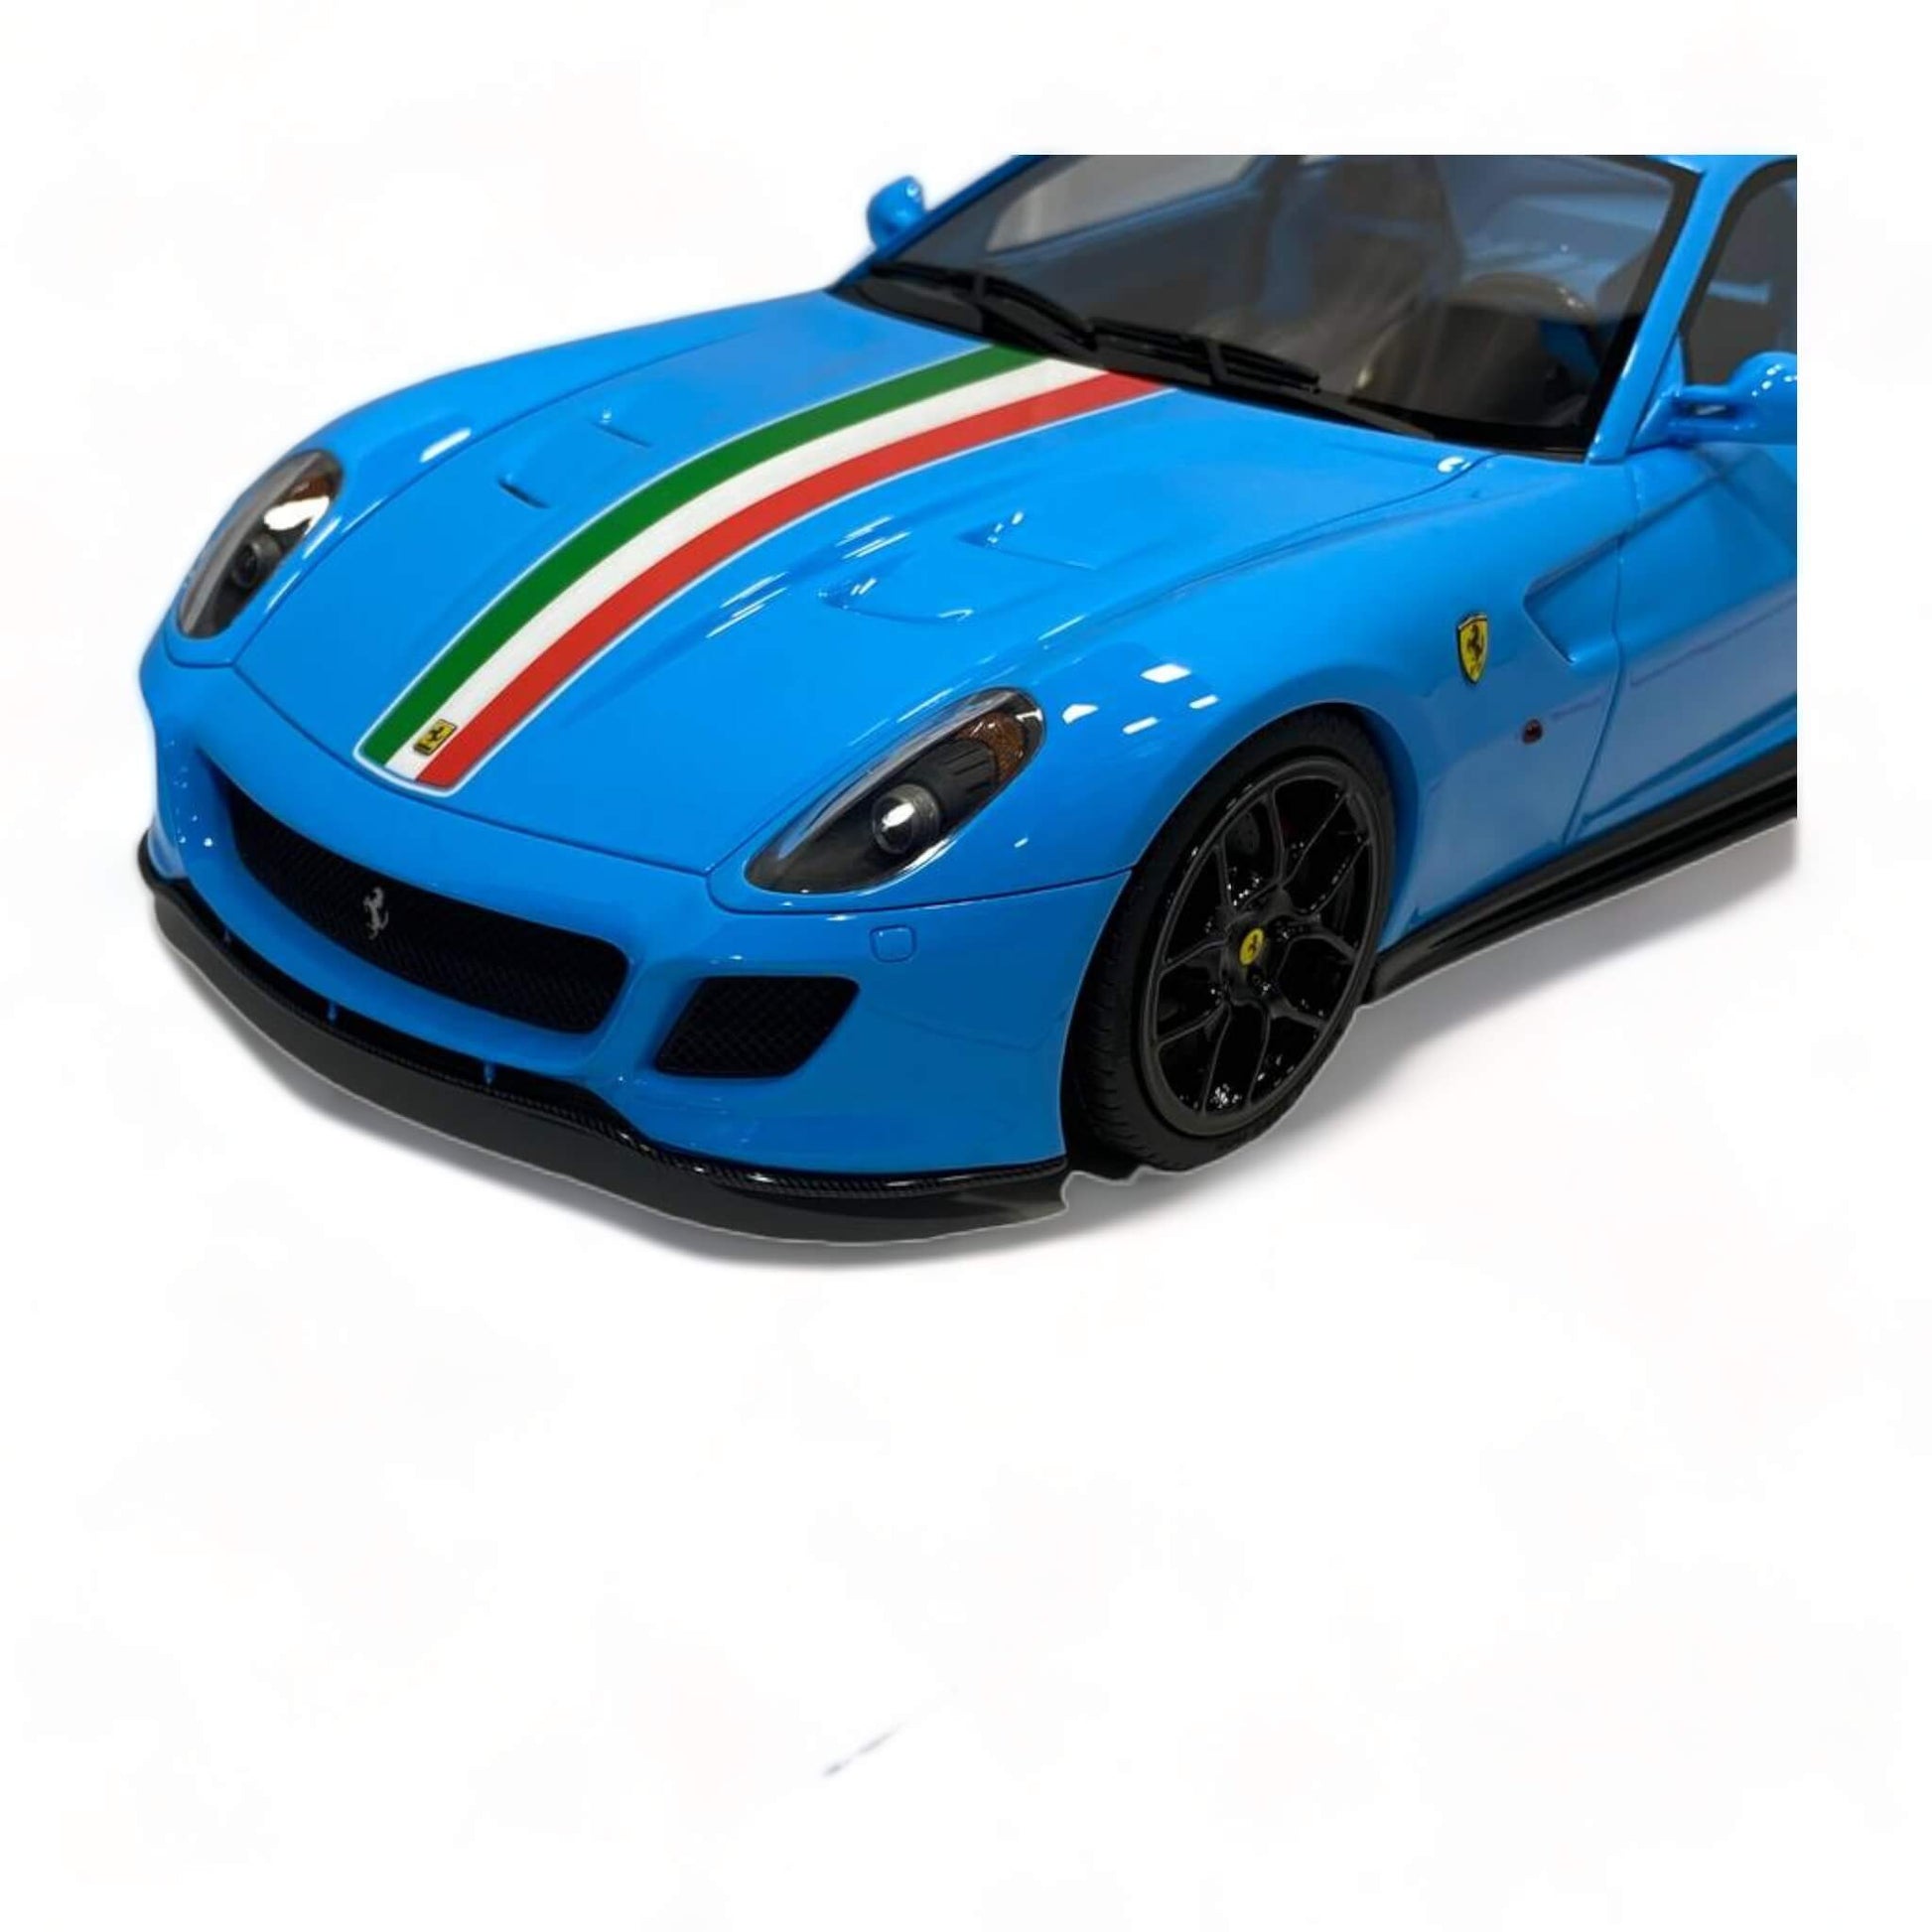 1/18 Ferrari Novitec 599 GTO Blue by Runner (27 of 67):|Sold in Dturman.com Dubai UAE.